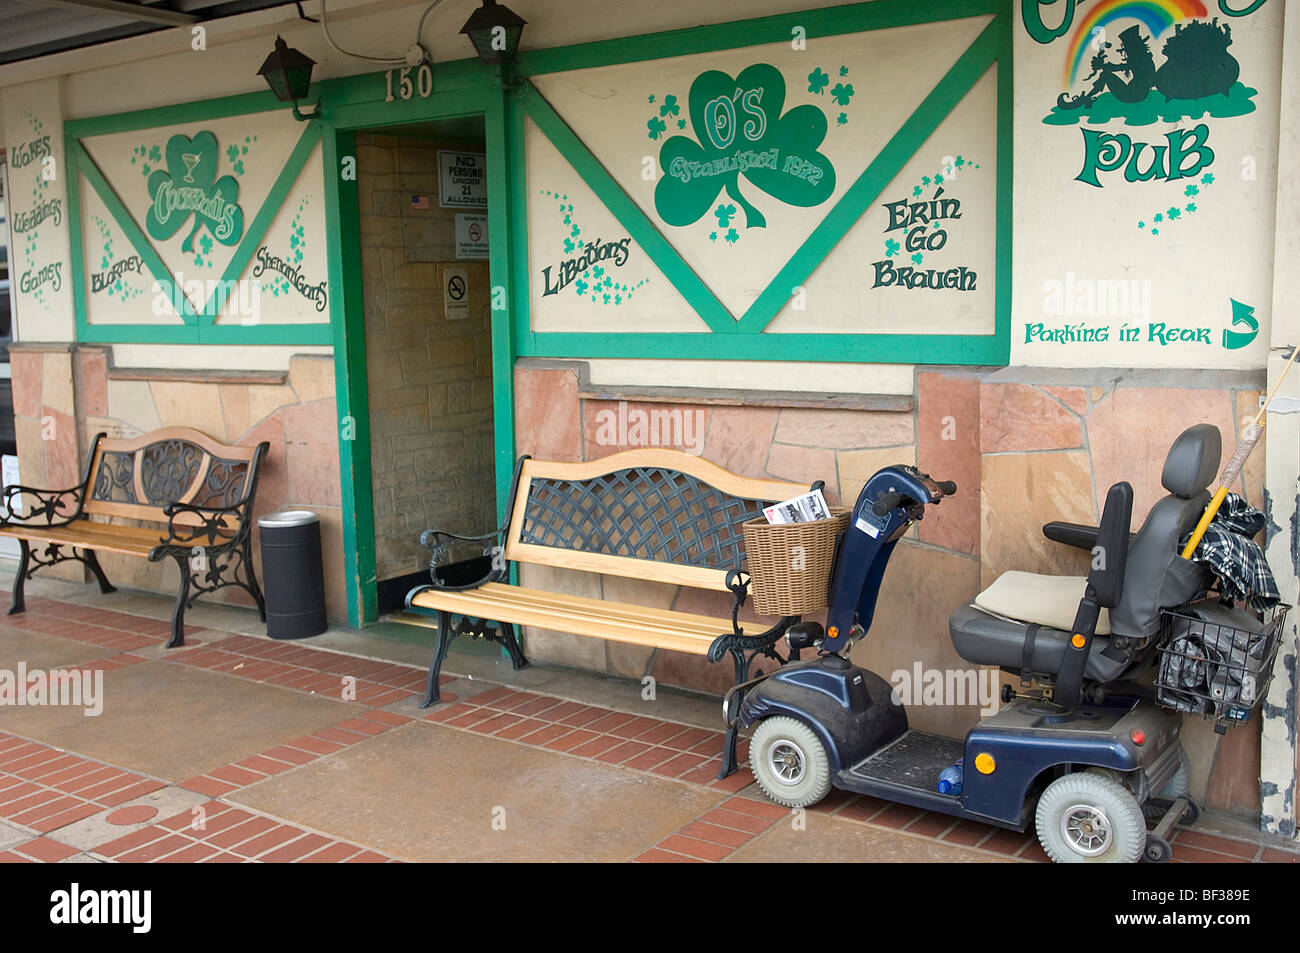 Un estilo de sillas de ruedas Scooter de movilidad está estacionado cerca de la entrada a un popular pub irlandés en el Old Towne distrito de Orange, CA. Foto de stock